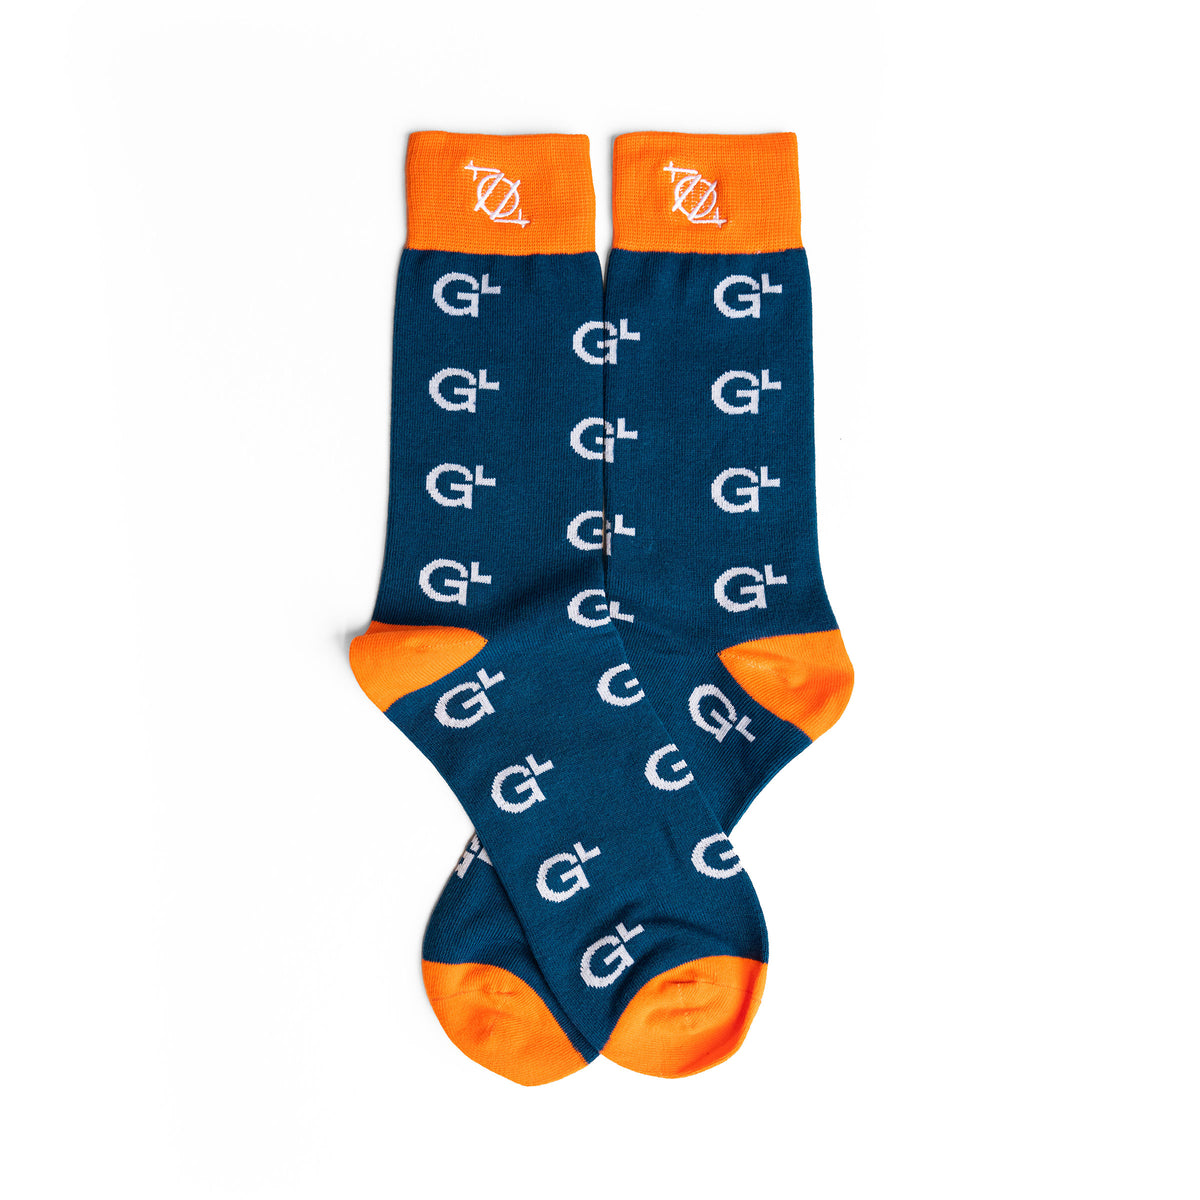 GlobalLogic Socks - Blue/Orange